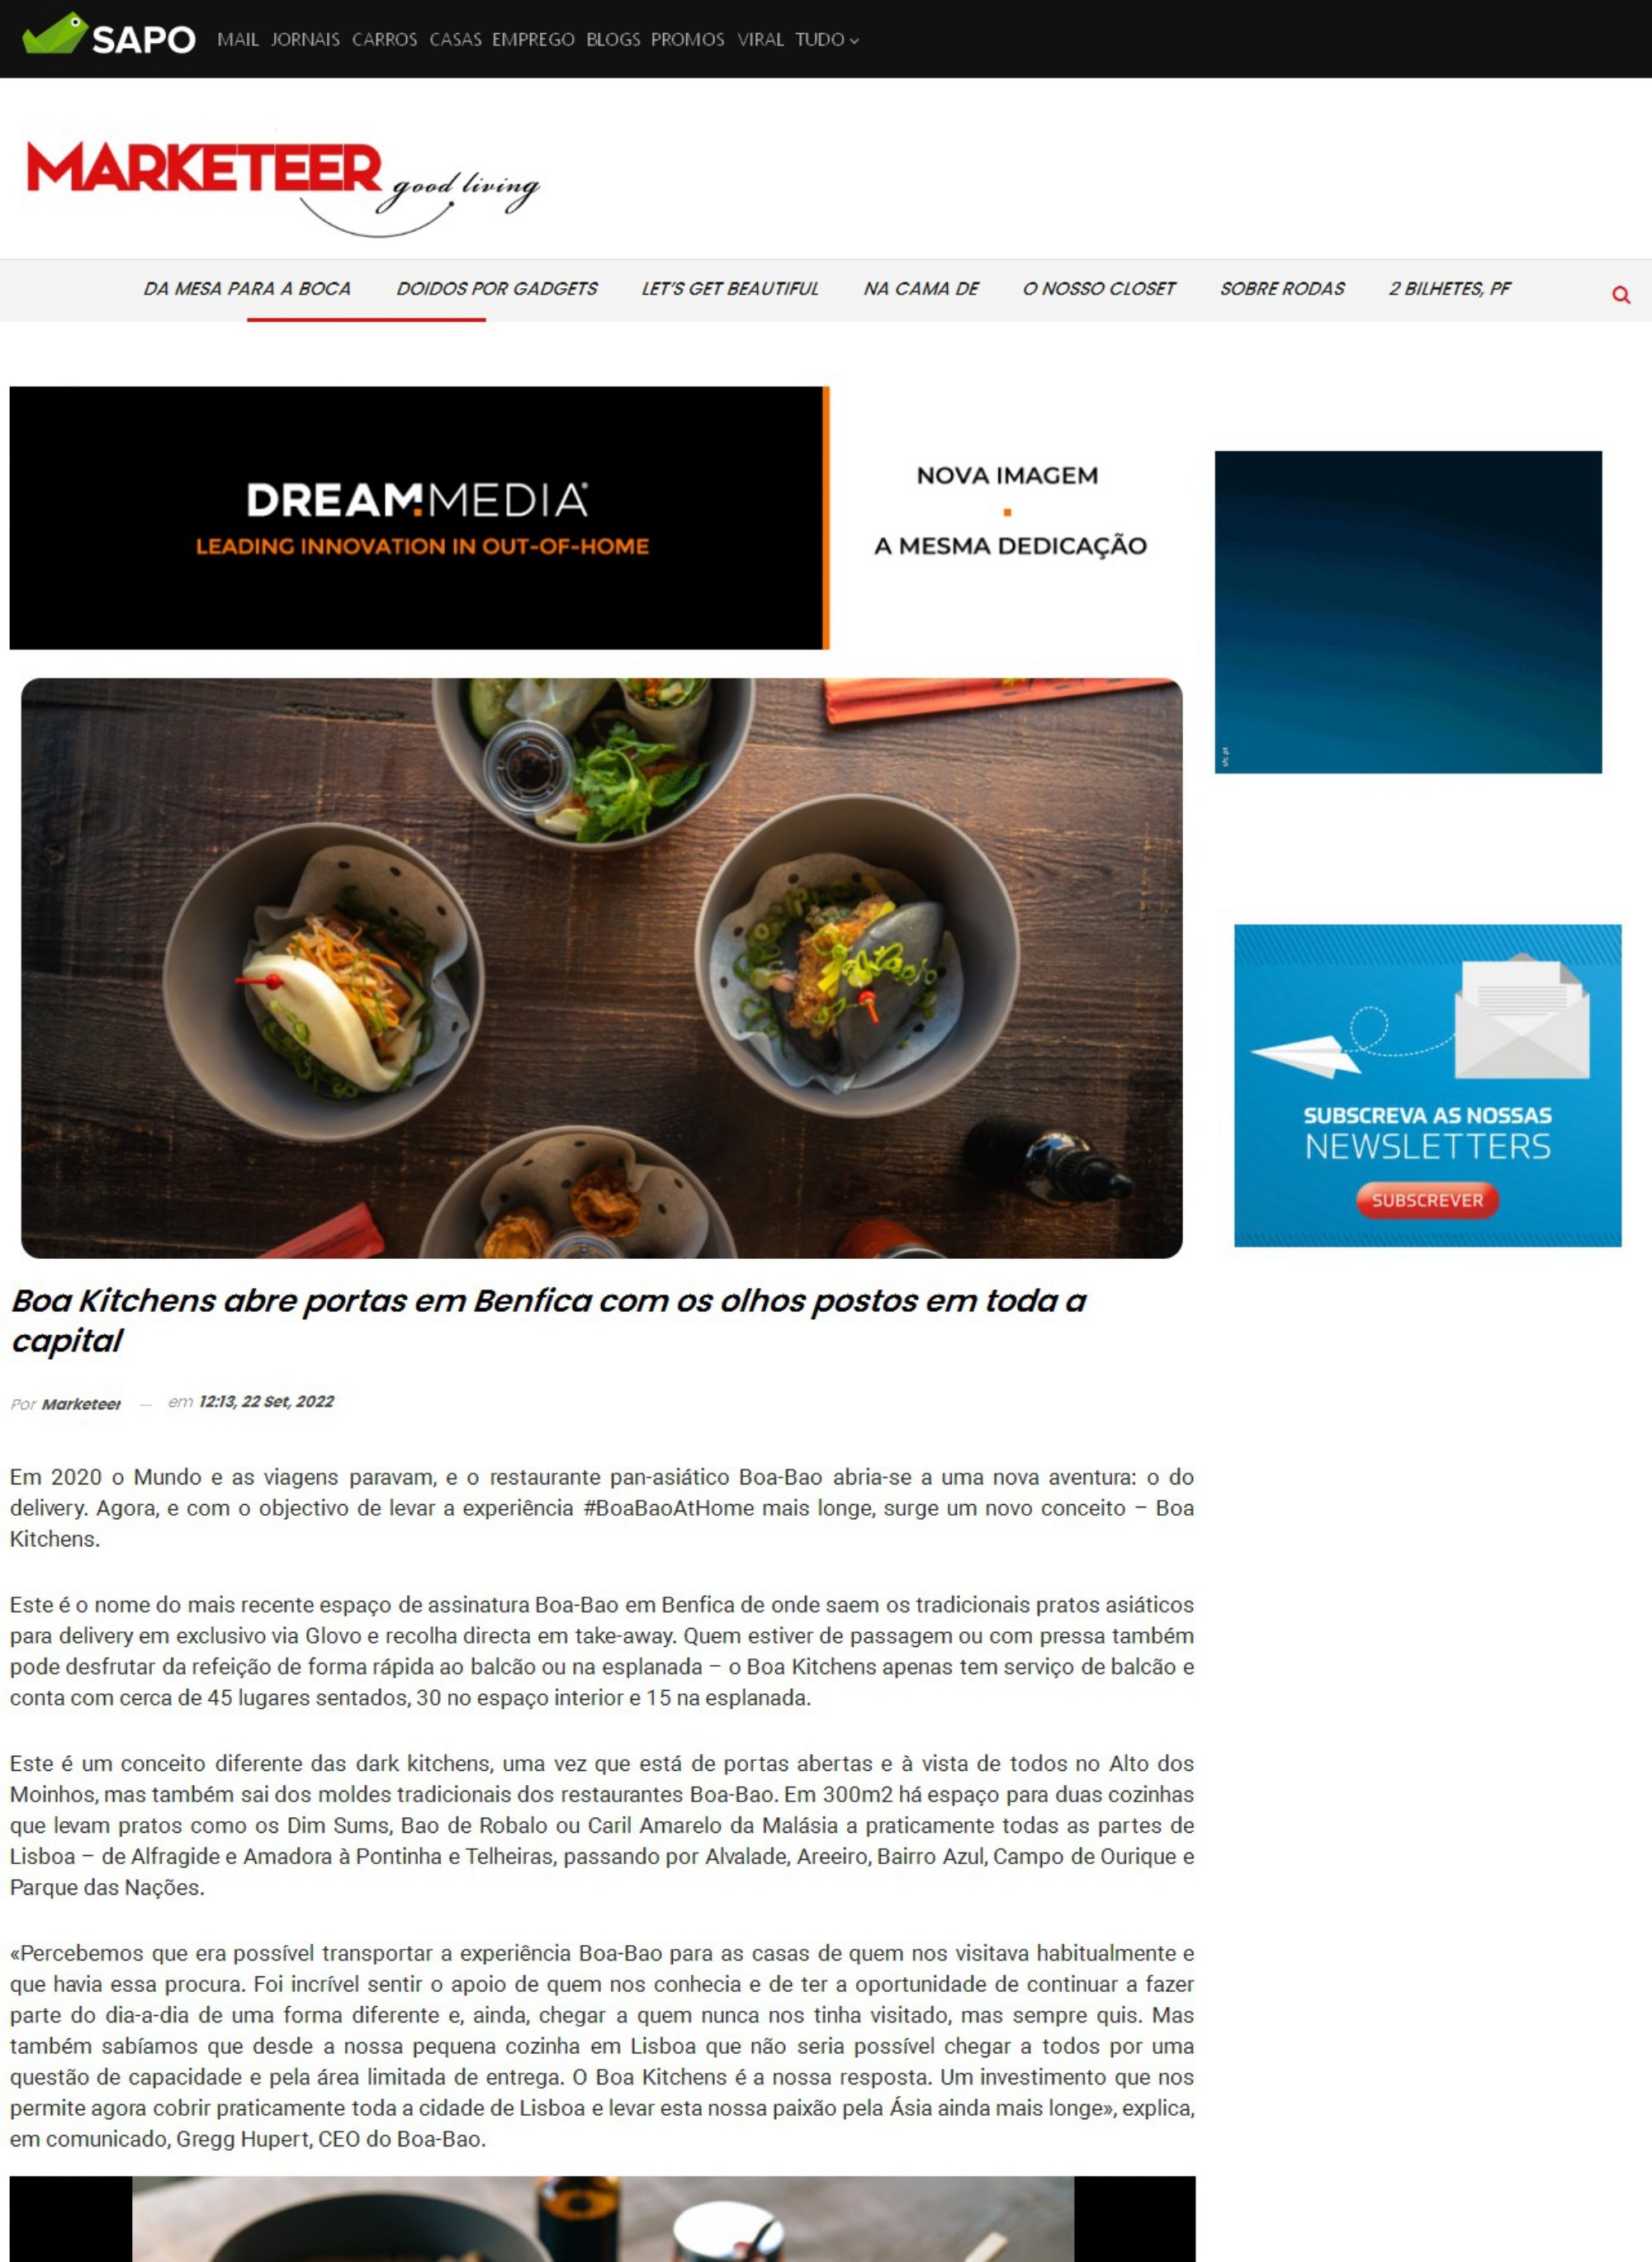 Marketeer Online_Cocinas Boa abre sus puertas en Benfica con la vista puesta en toda la capital_page-0001.jpg